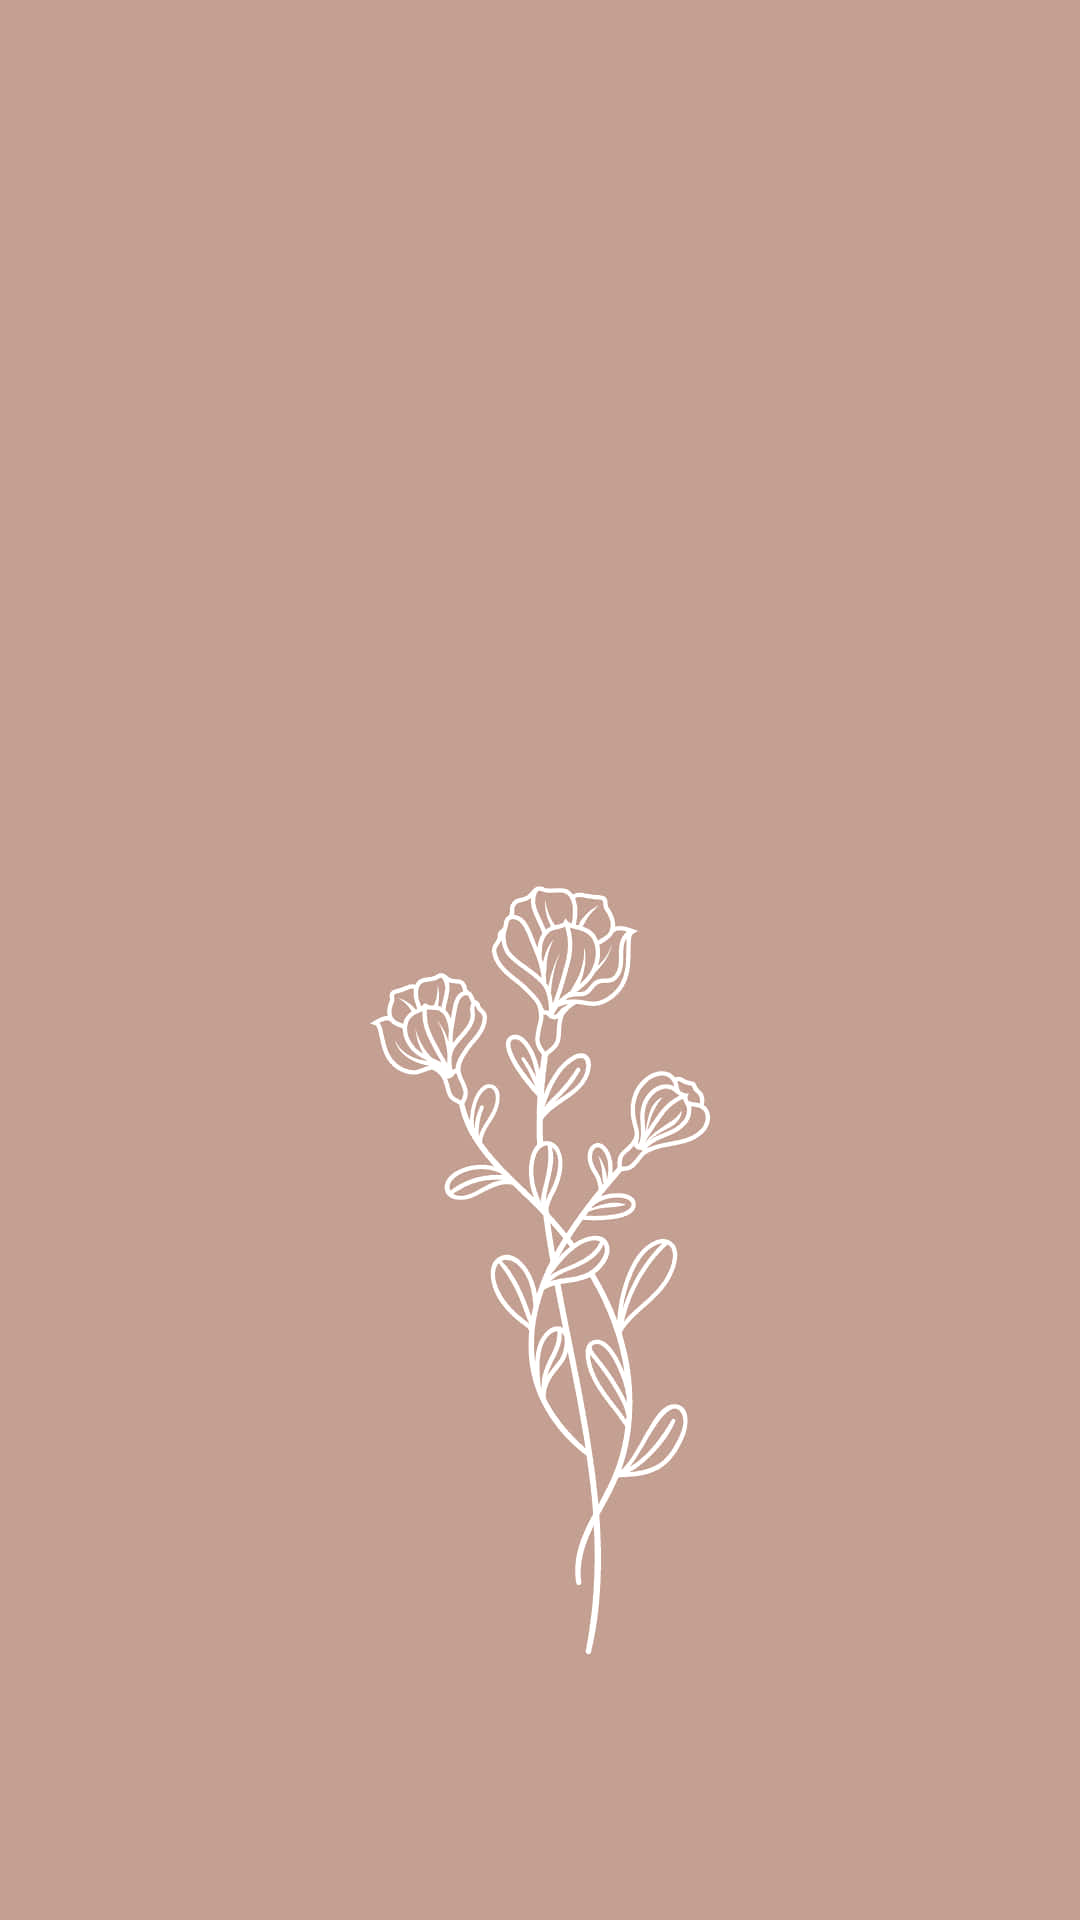 Eineweiße Blume Auf Einem Beigen Hintergrund Wallpaper